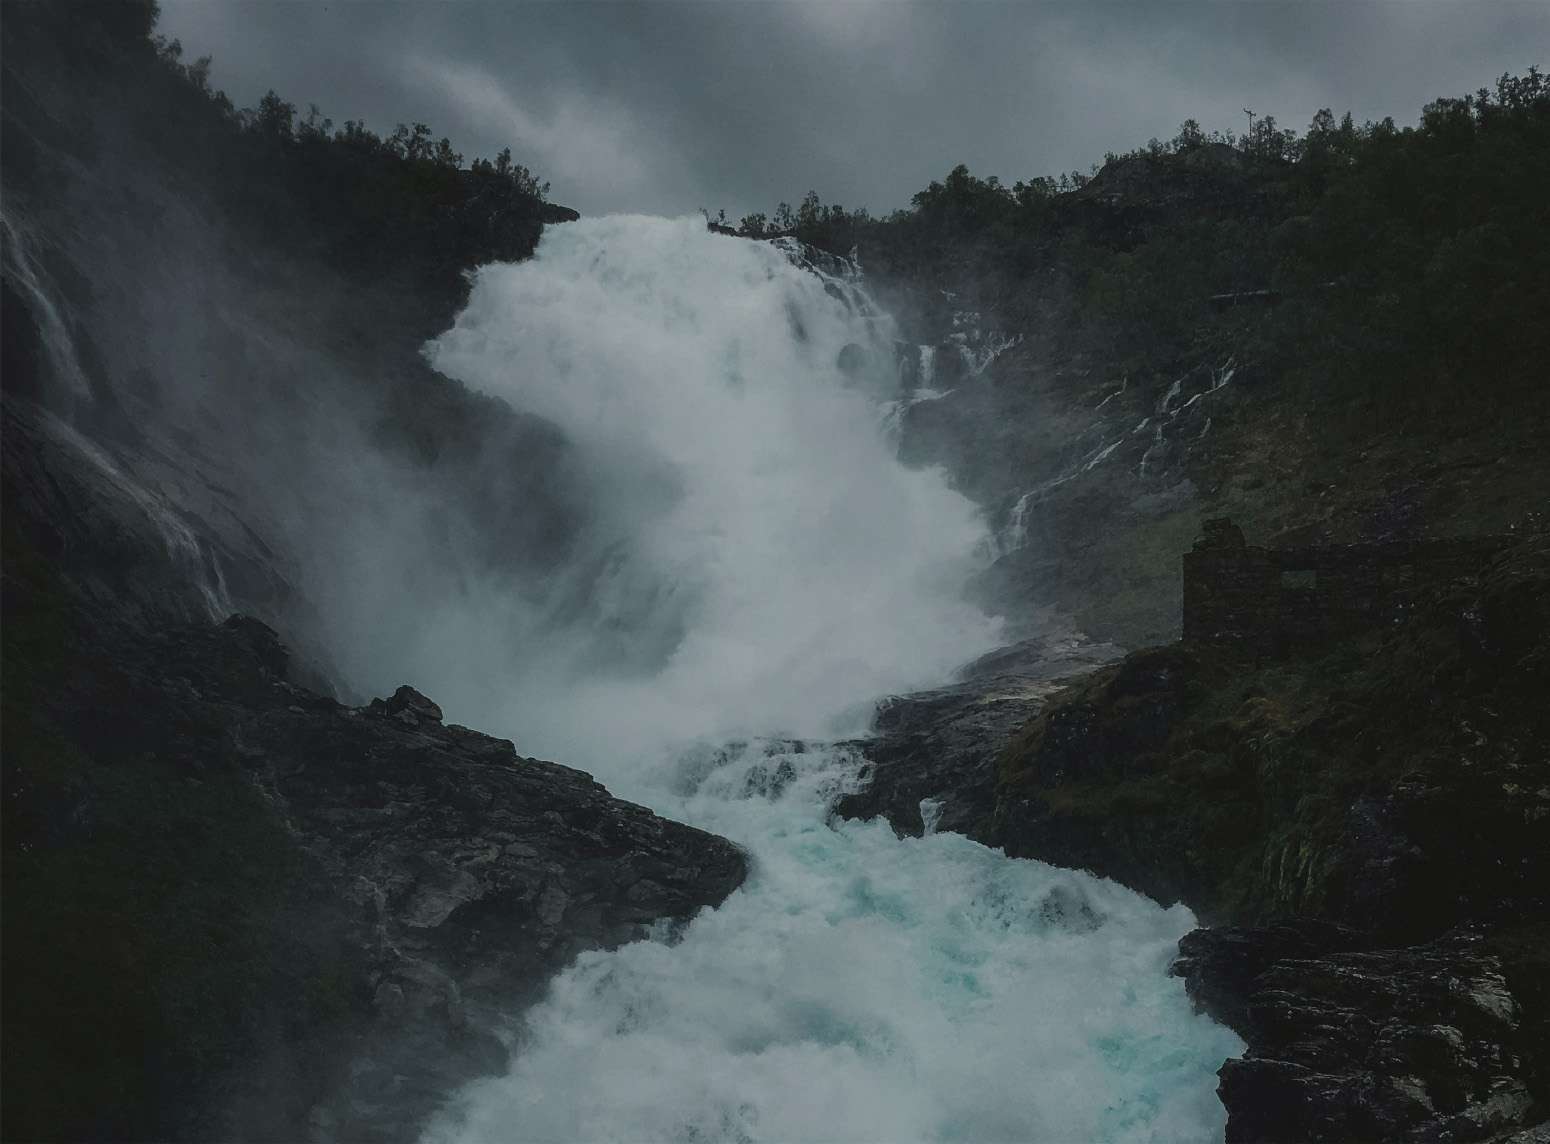 Imagen de una enorme cascada por donde el agua corre con una gran fuerza, arrasando aquello por lo que pasa.